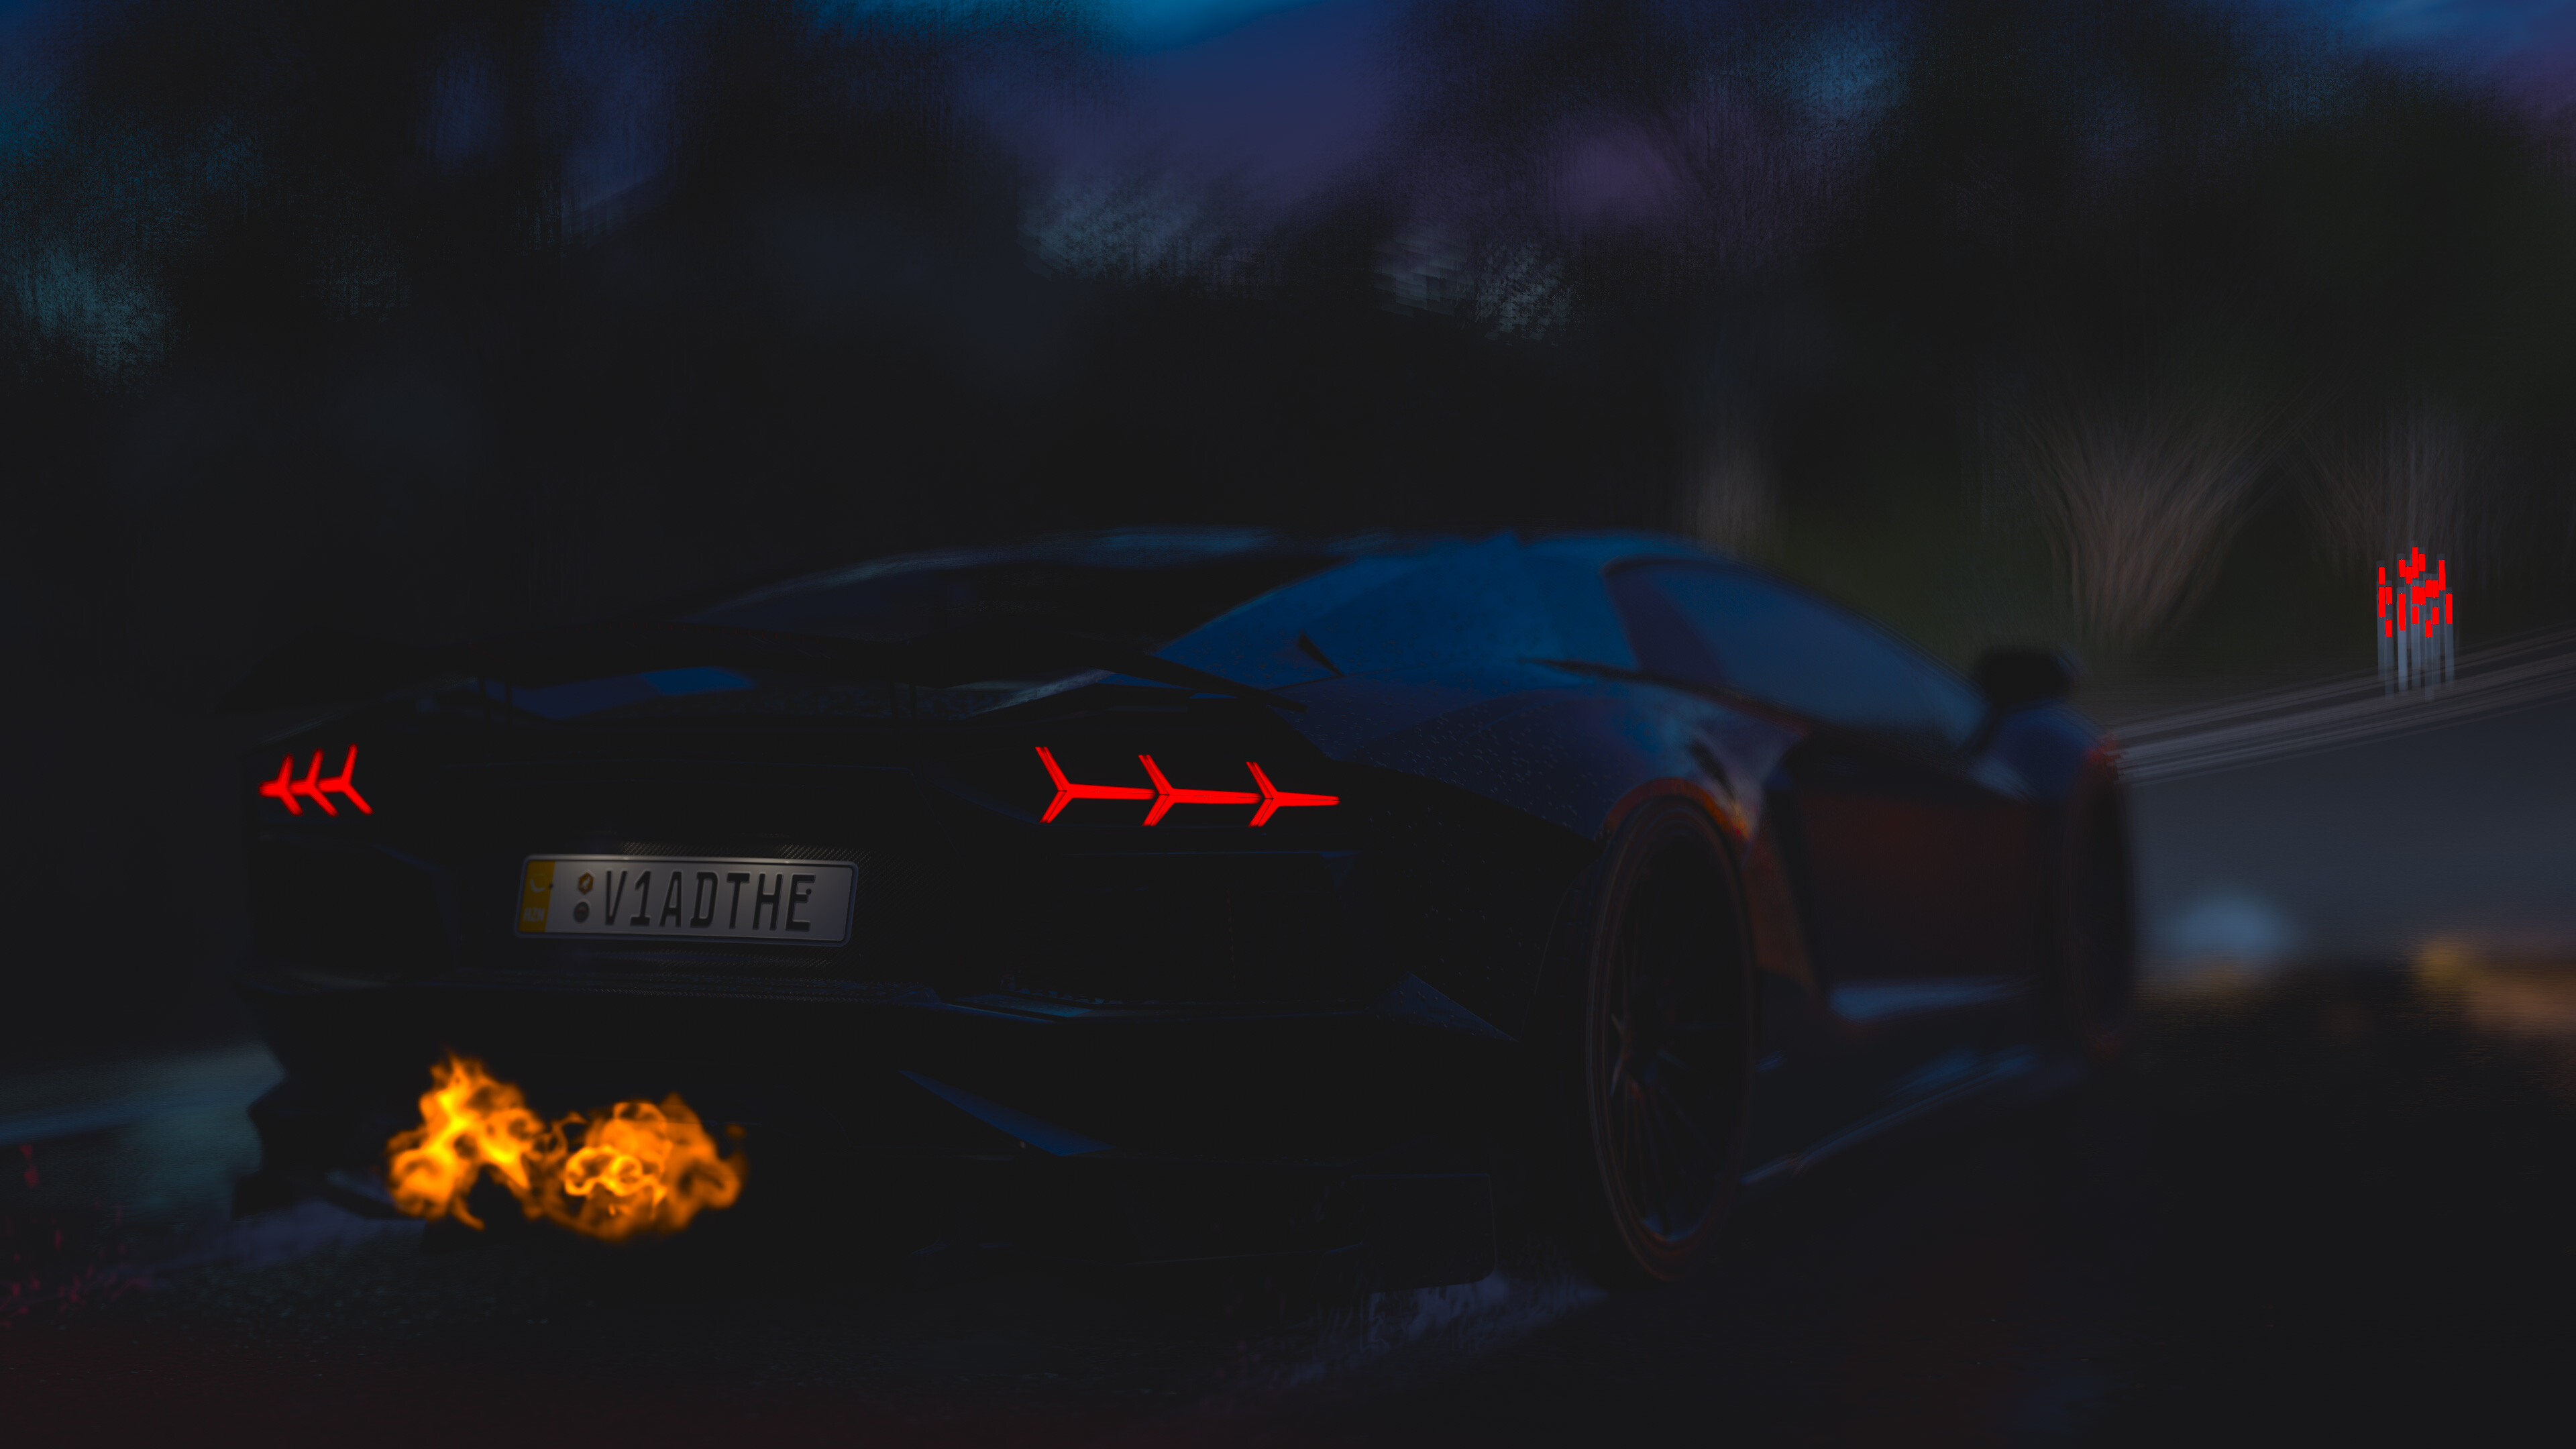 Lamborghini: Forza Horizon 3, Aventador, Italian manufacturer. 3840x2160 4K Background.